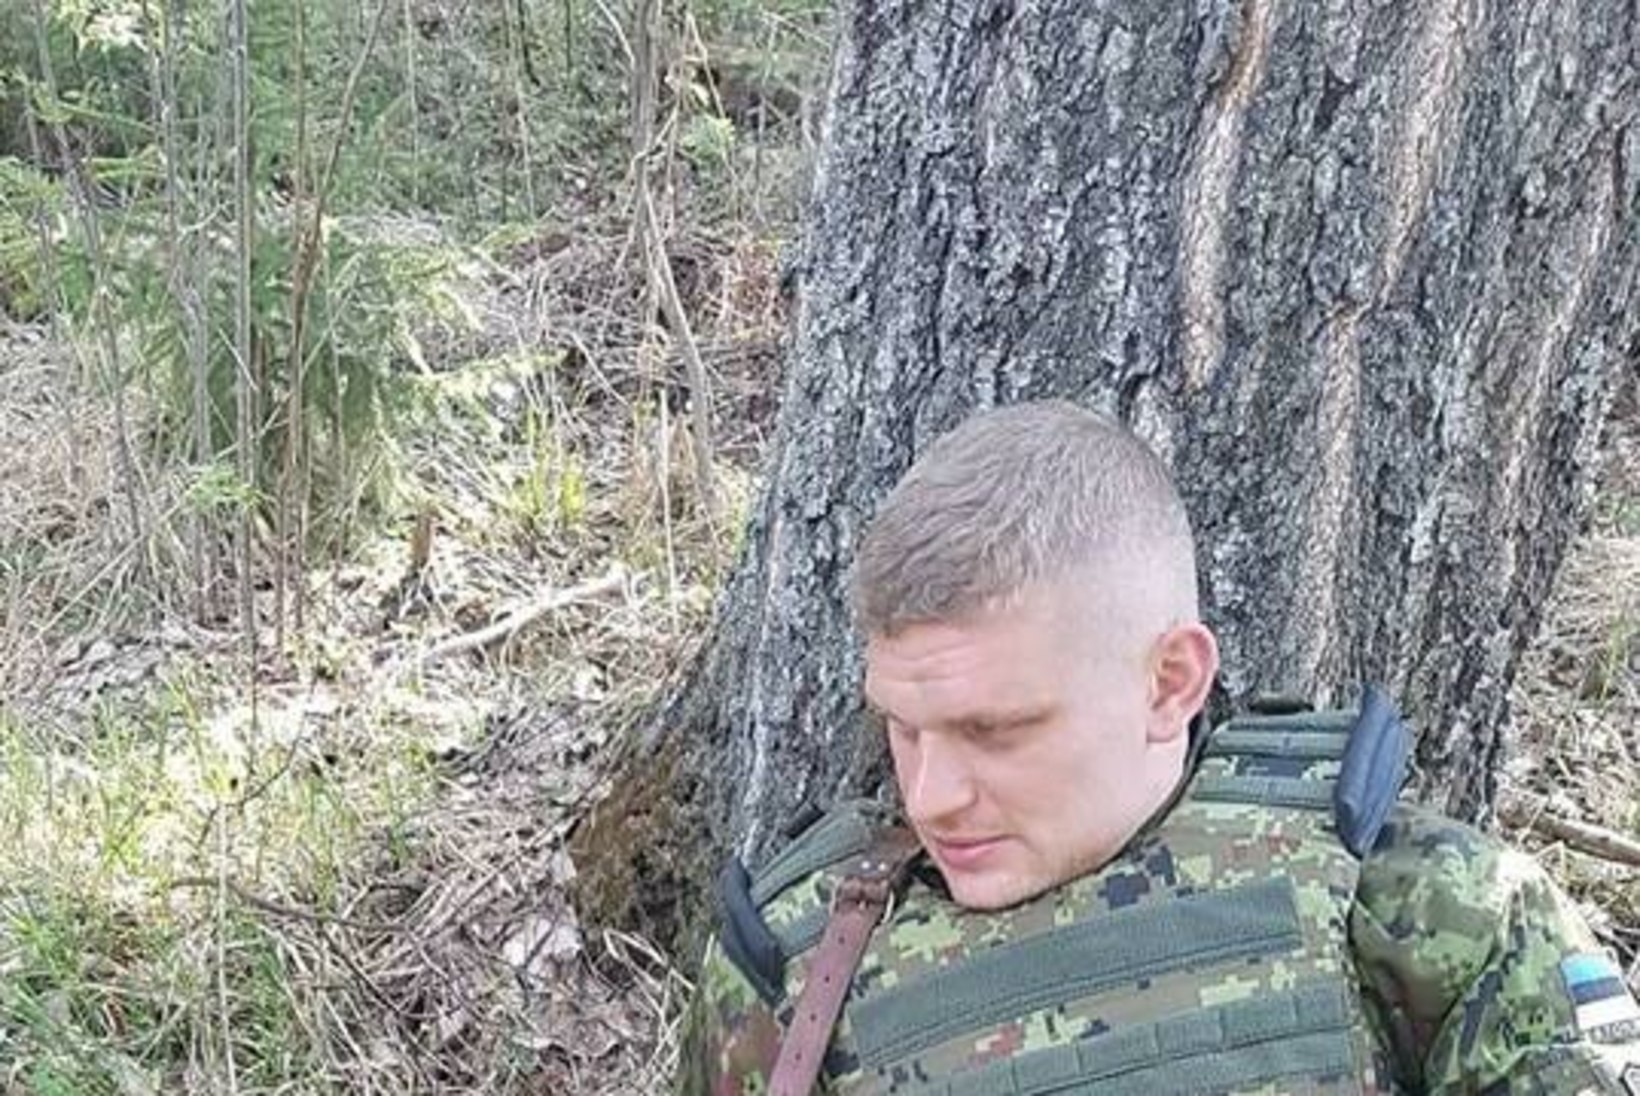 FOTOD JA VIDEO | Lembehetk Siilil: põdravasikas andis sõdurile musi!